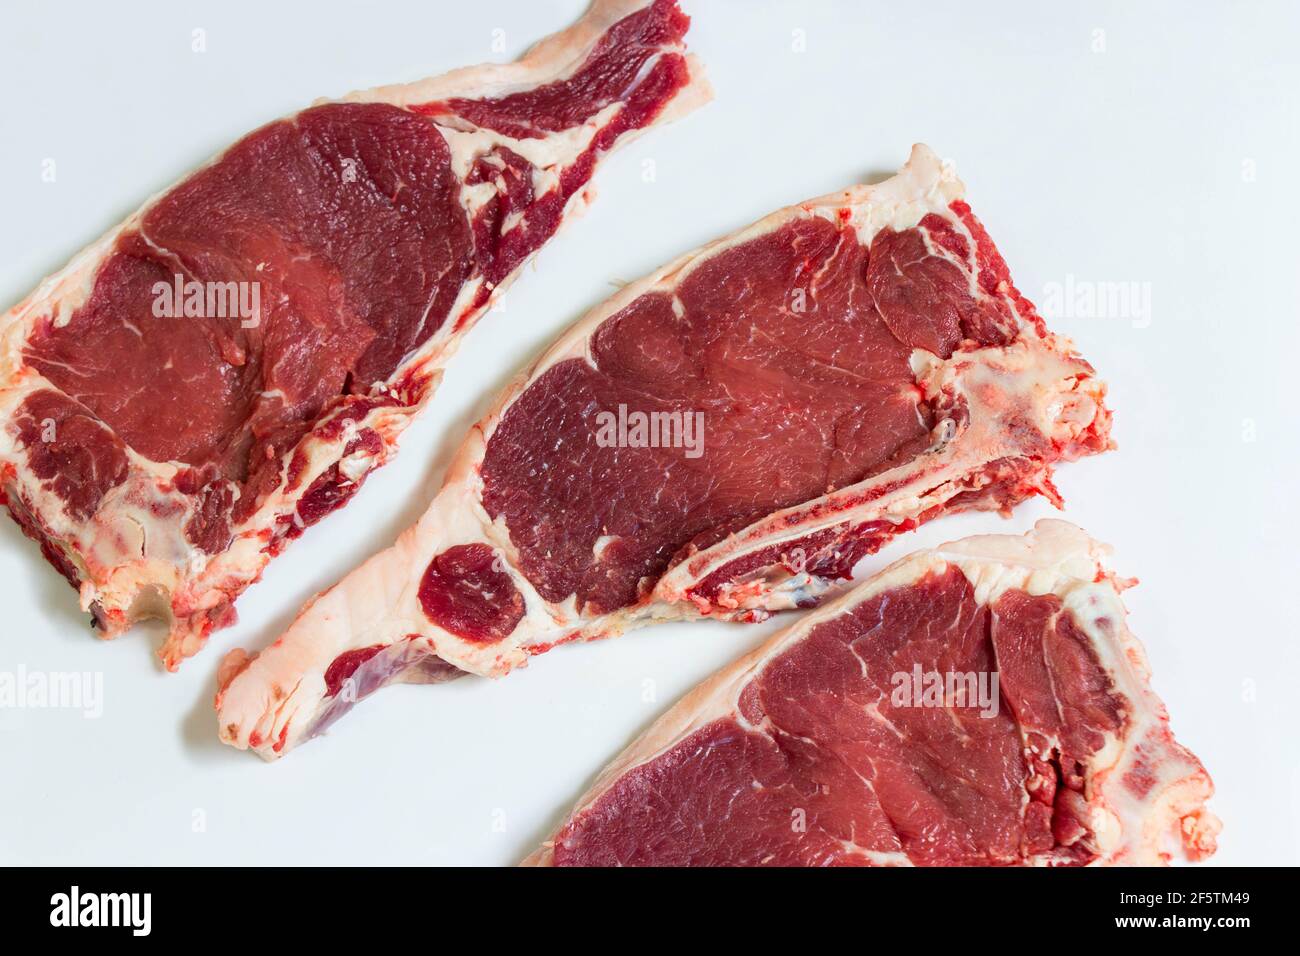 Biftecks de ribeye fraîchement coupés sur une table de bouchers. Biftecks de ribeye de qualité supérieure Banque D'Images